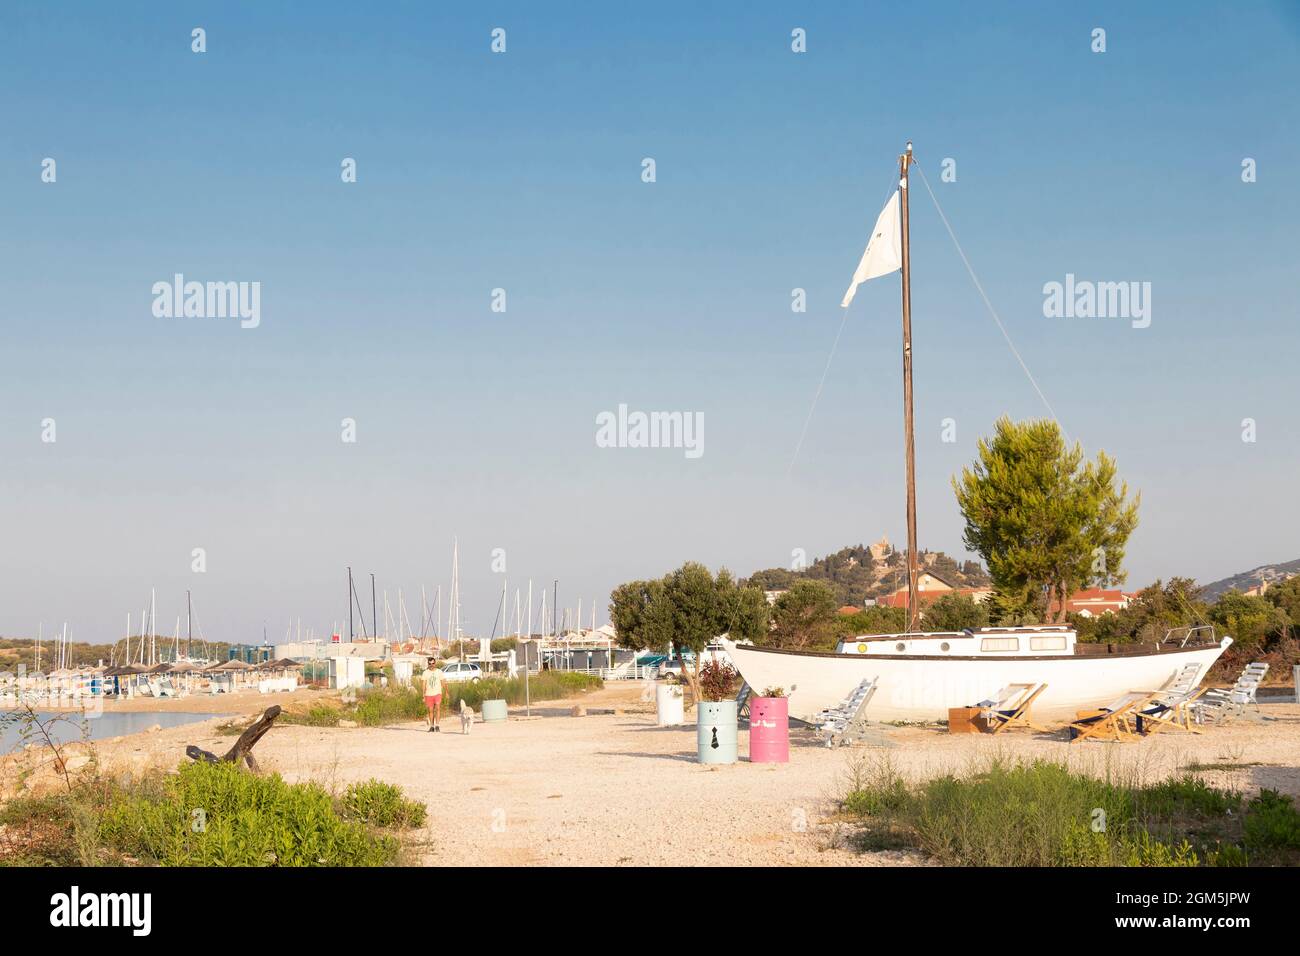 Tribunj, Croacia - 16 de agosto de 2021: Hombre caminando un perro en la playa vacía por el café bar con un barco a vela en la orilla Foto de stock